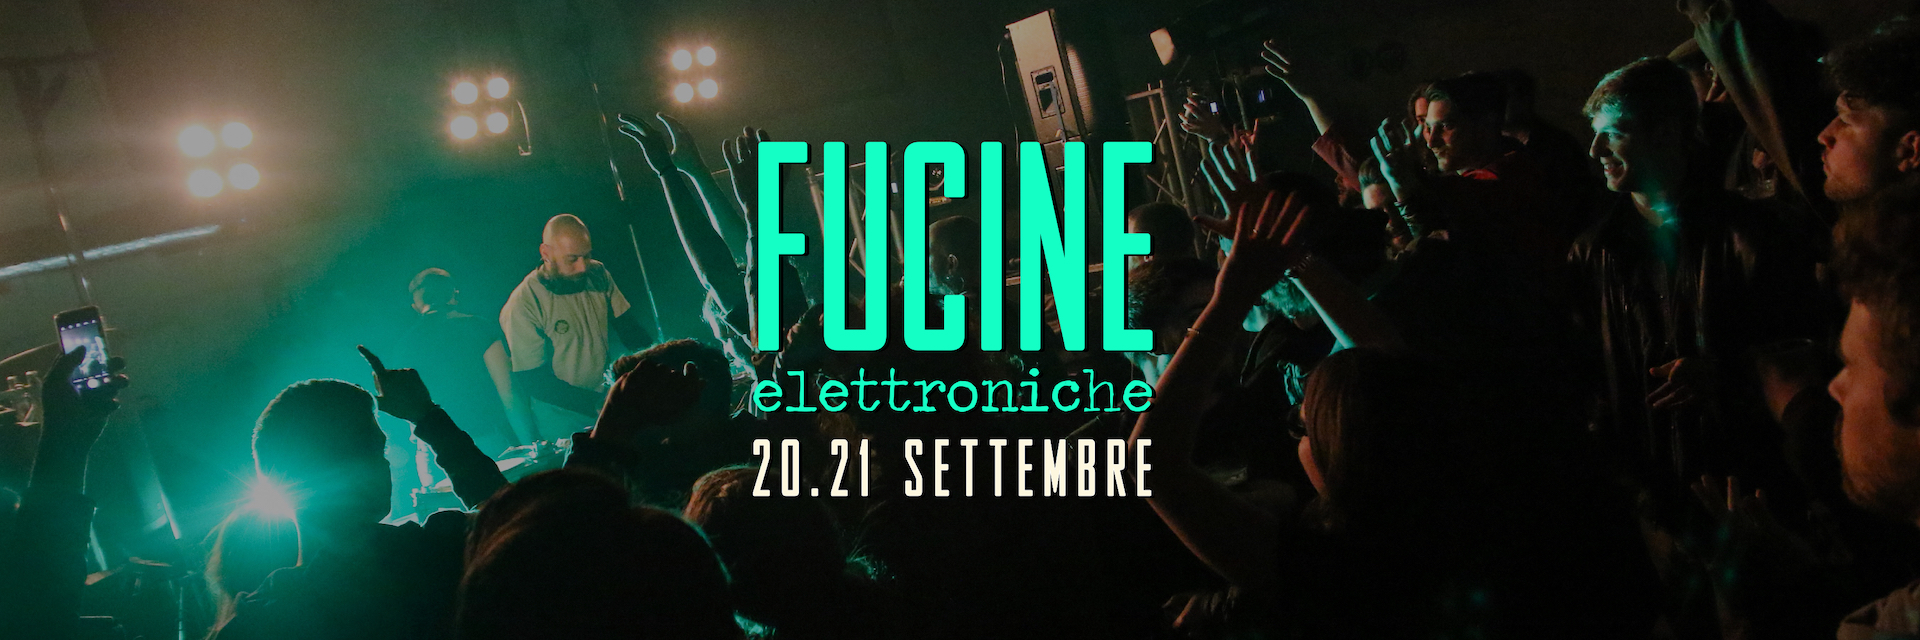 Fucine Elettroniche a Belluno - 20 e 21 Settembre 2019 - Xtreme Festival